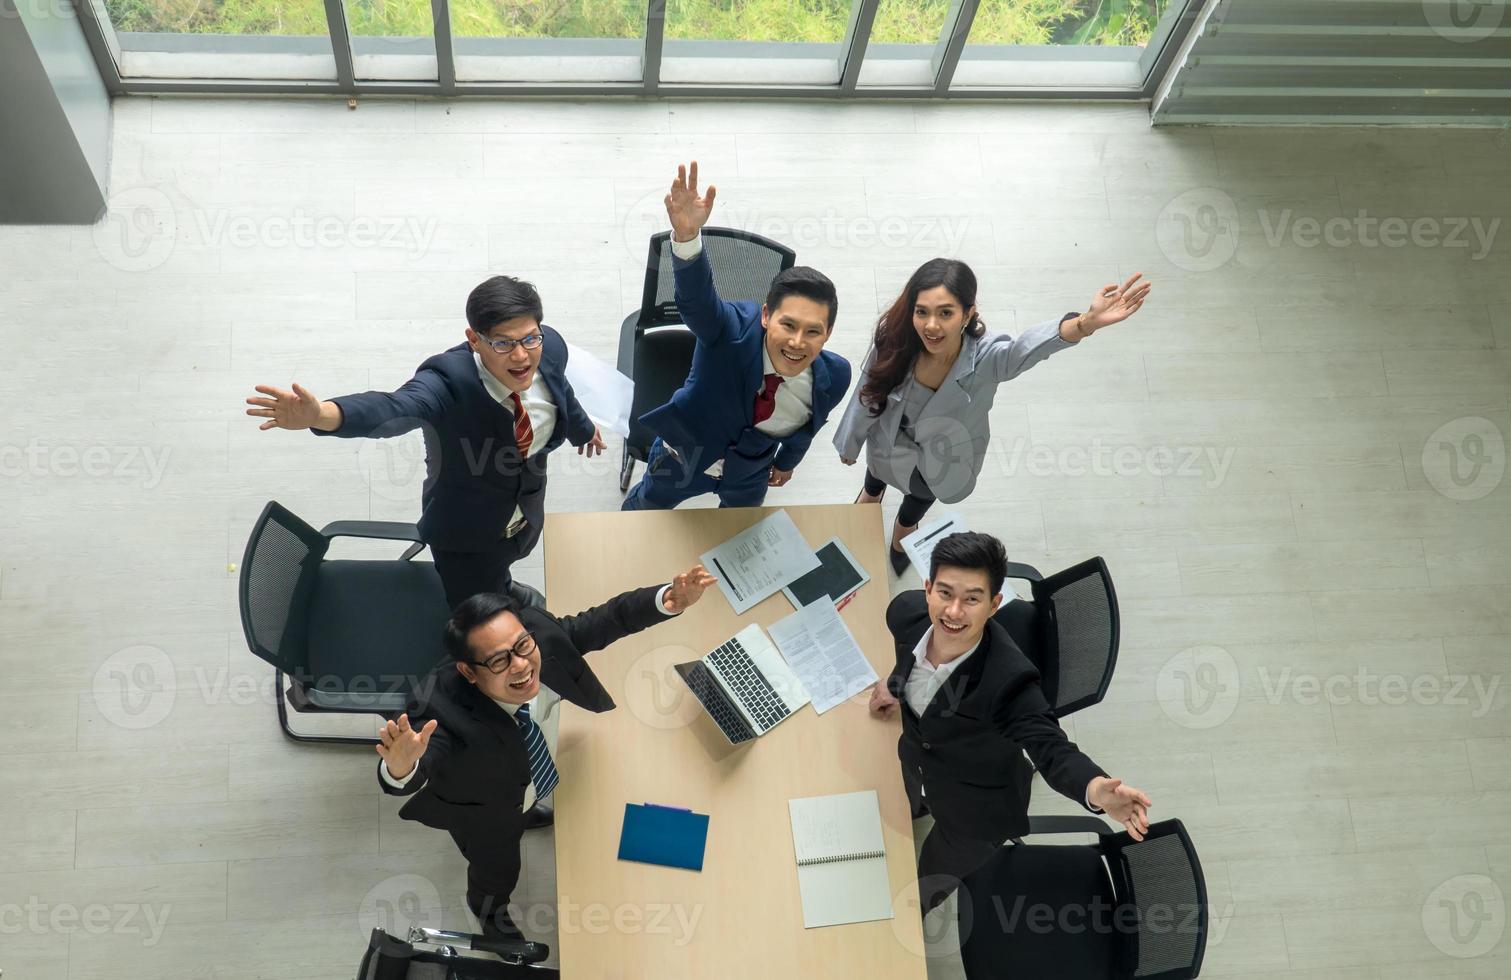 bovenaanzicht op een groep zakenman en zakenvrouw die een vergadering heeft en een zakelijke verbintenis aangaat. foto